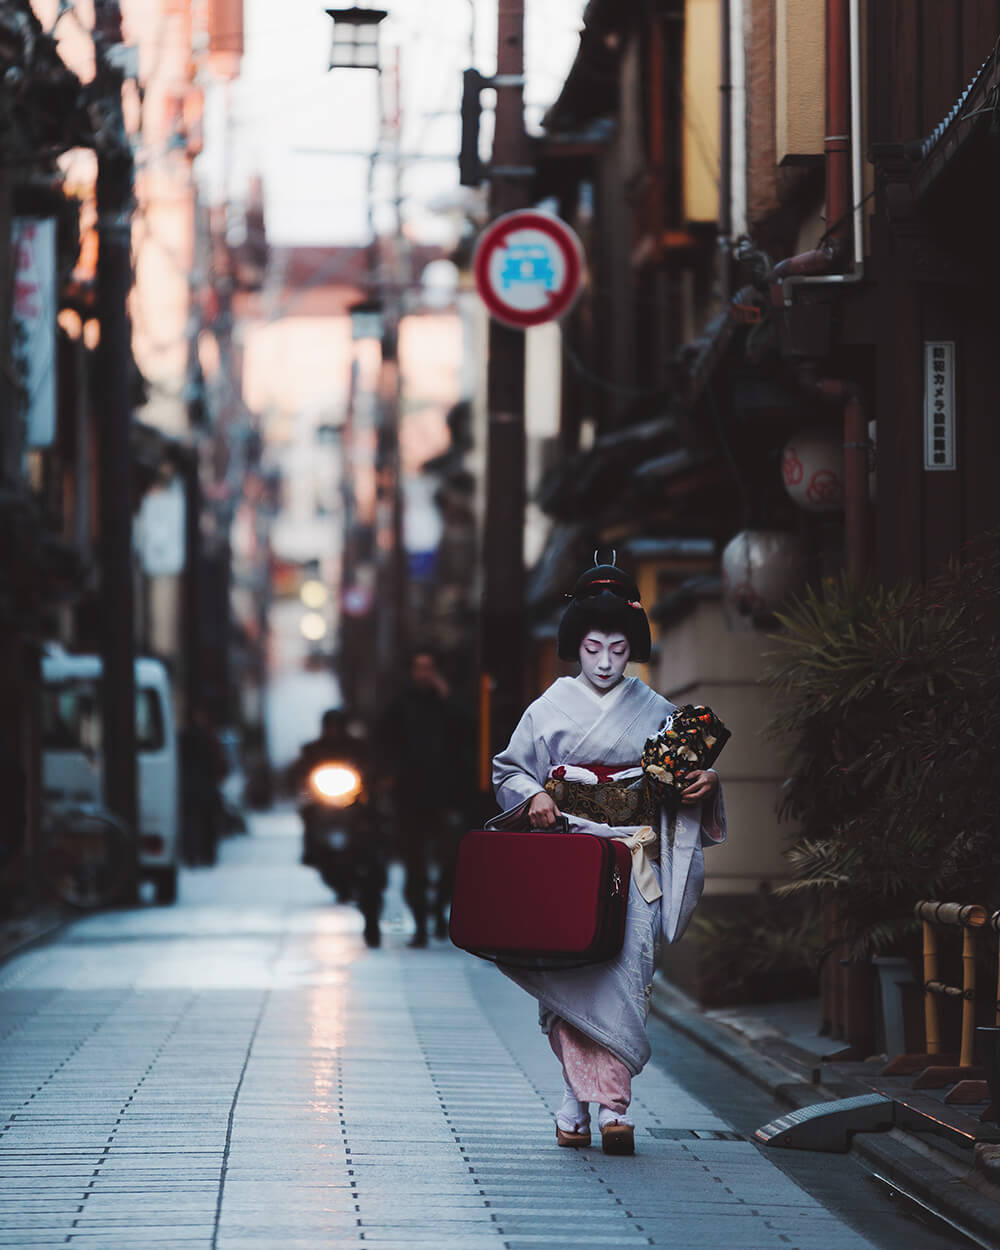 Photo of a Geisha in Pontocho Alley